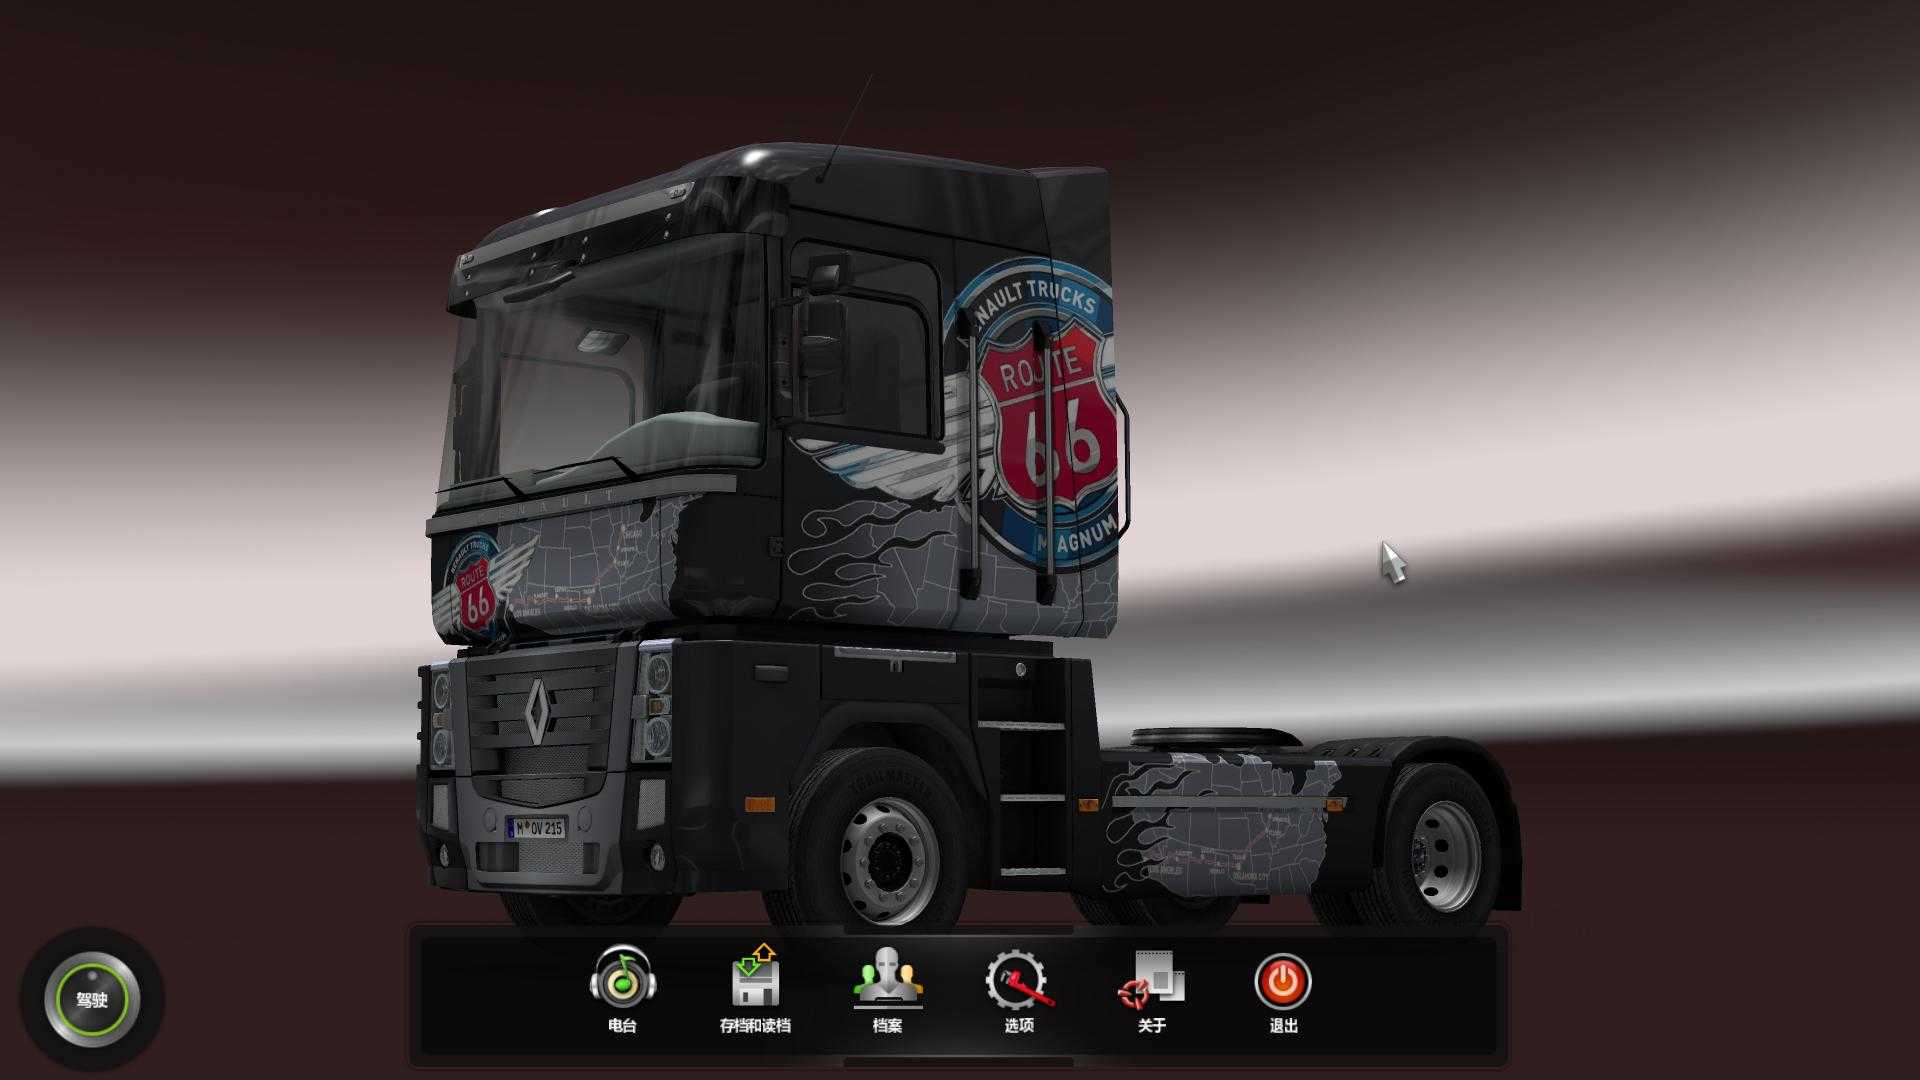 欧洲卡车模拟2游戏